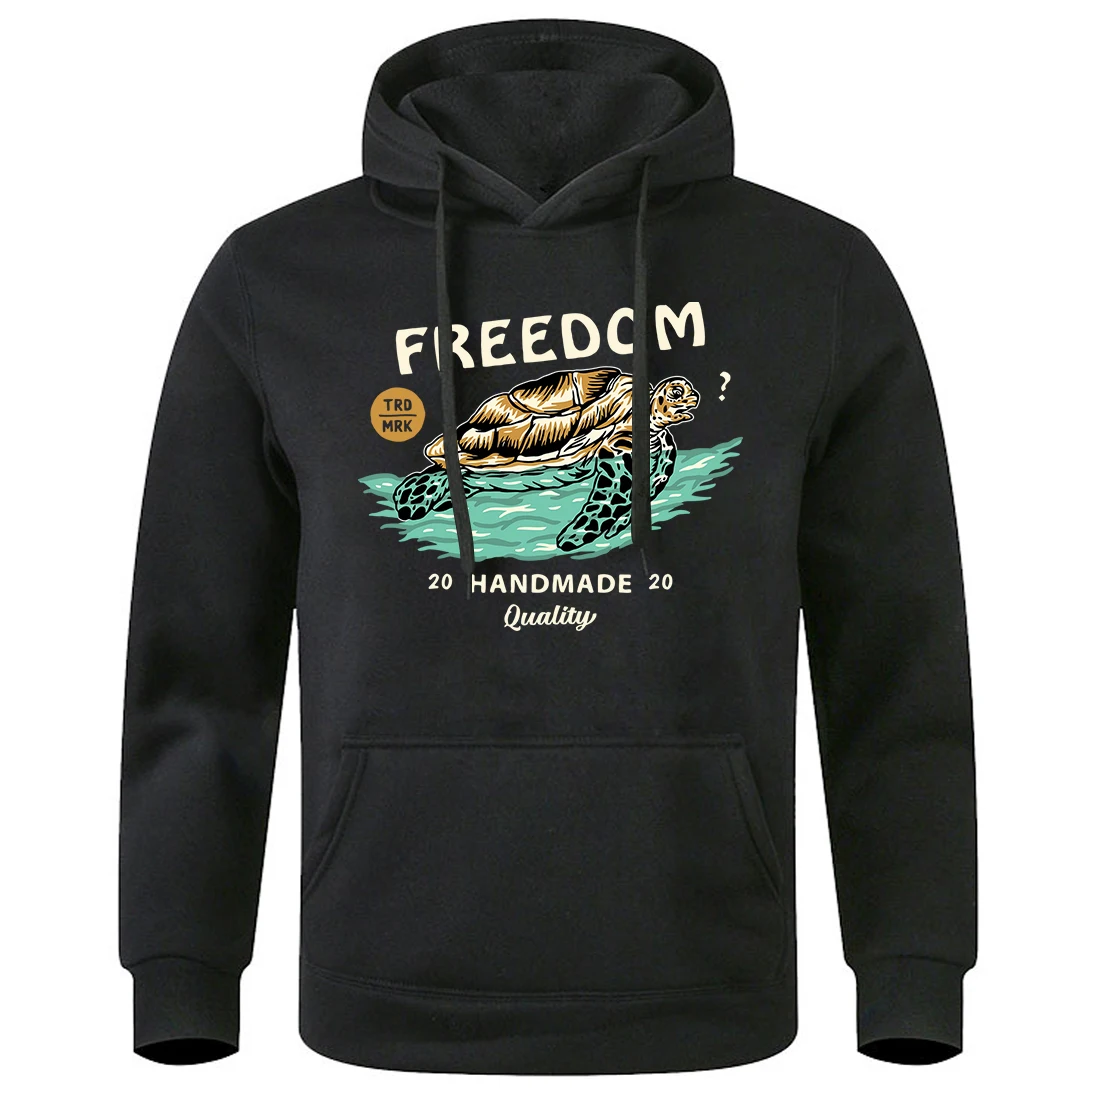 

Freedom Sea Turtle Roam The Ocean Men Hooded Loose Oversized Hoodies Sport Street Fashion Hoody Warm Fleece Winter Sweatshirt